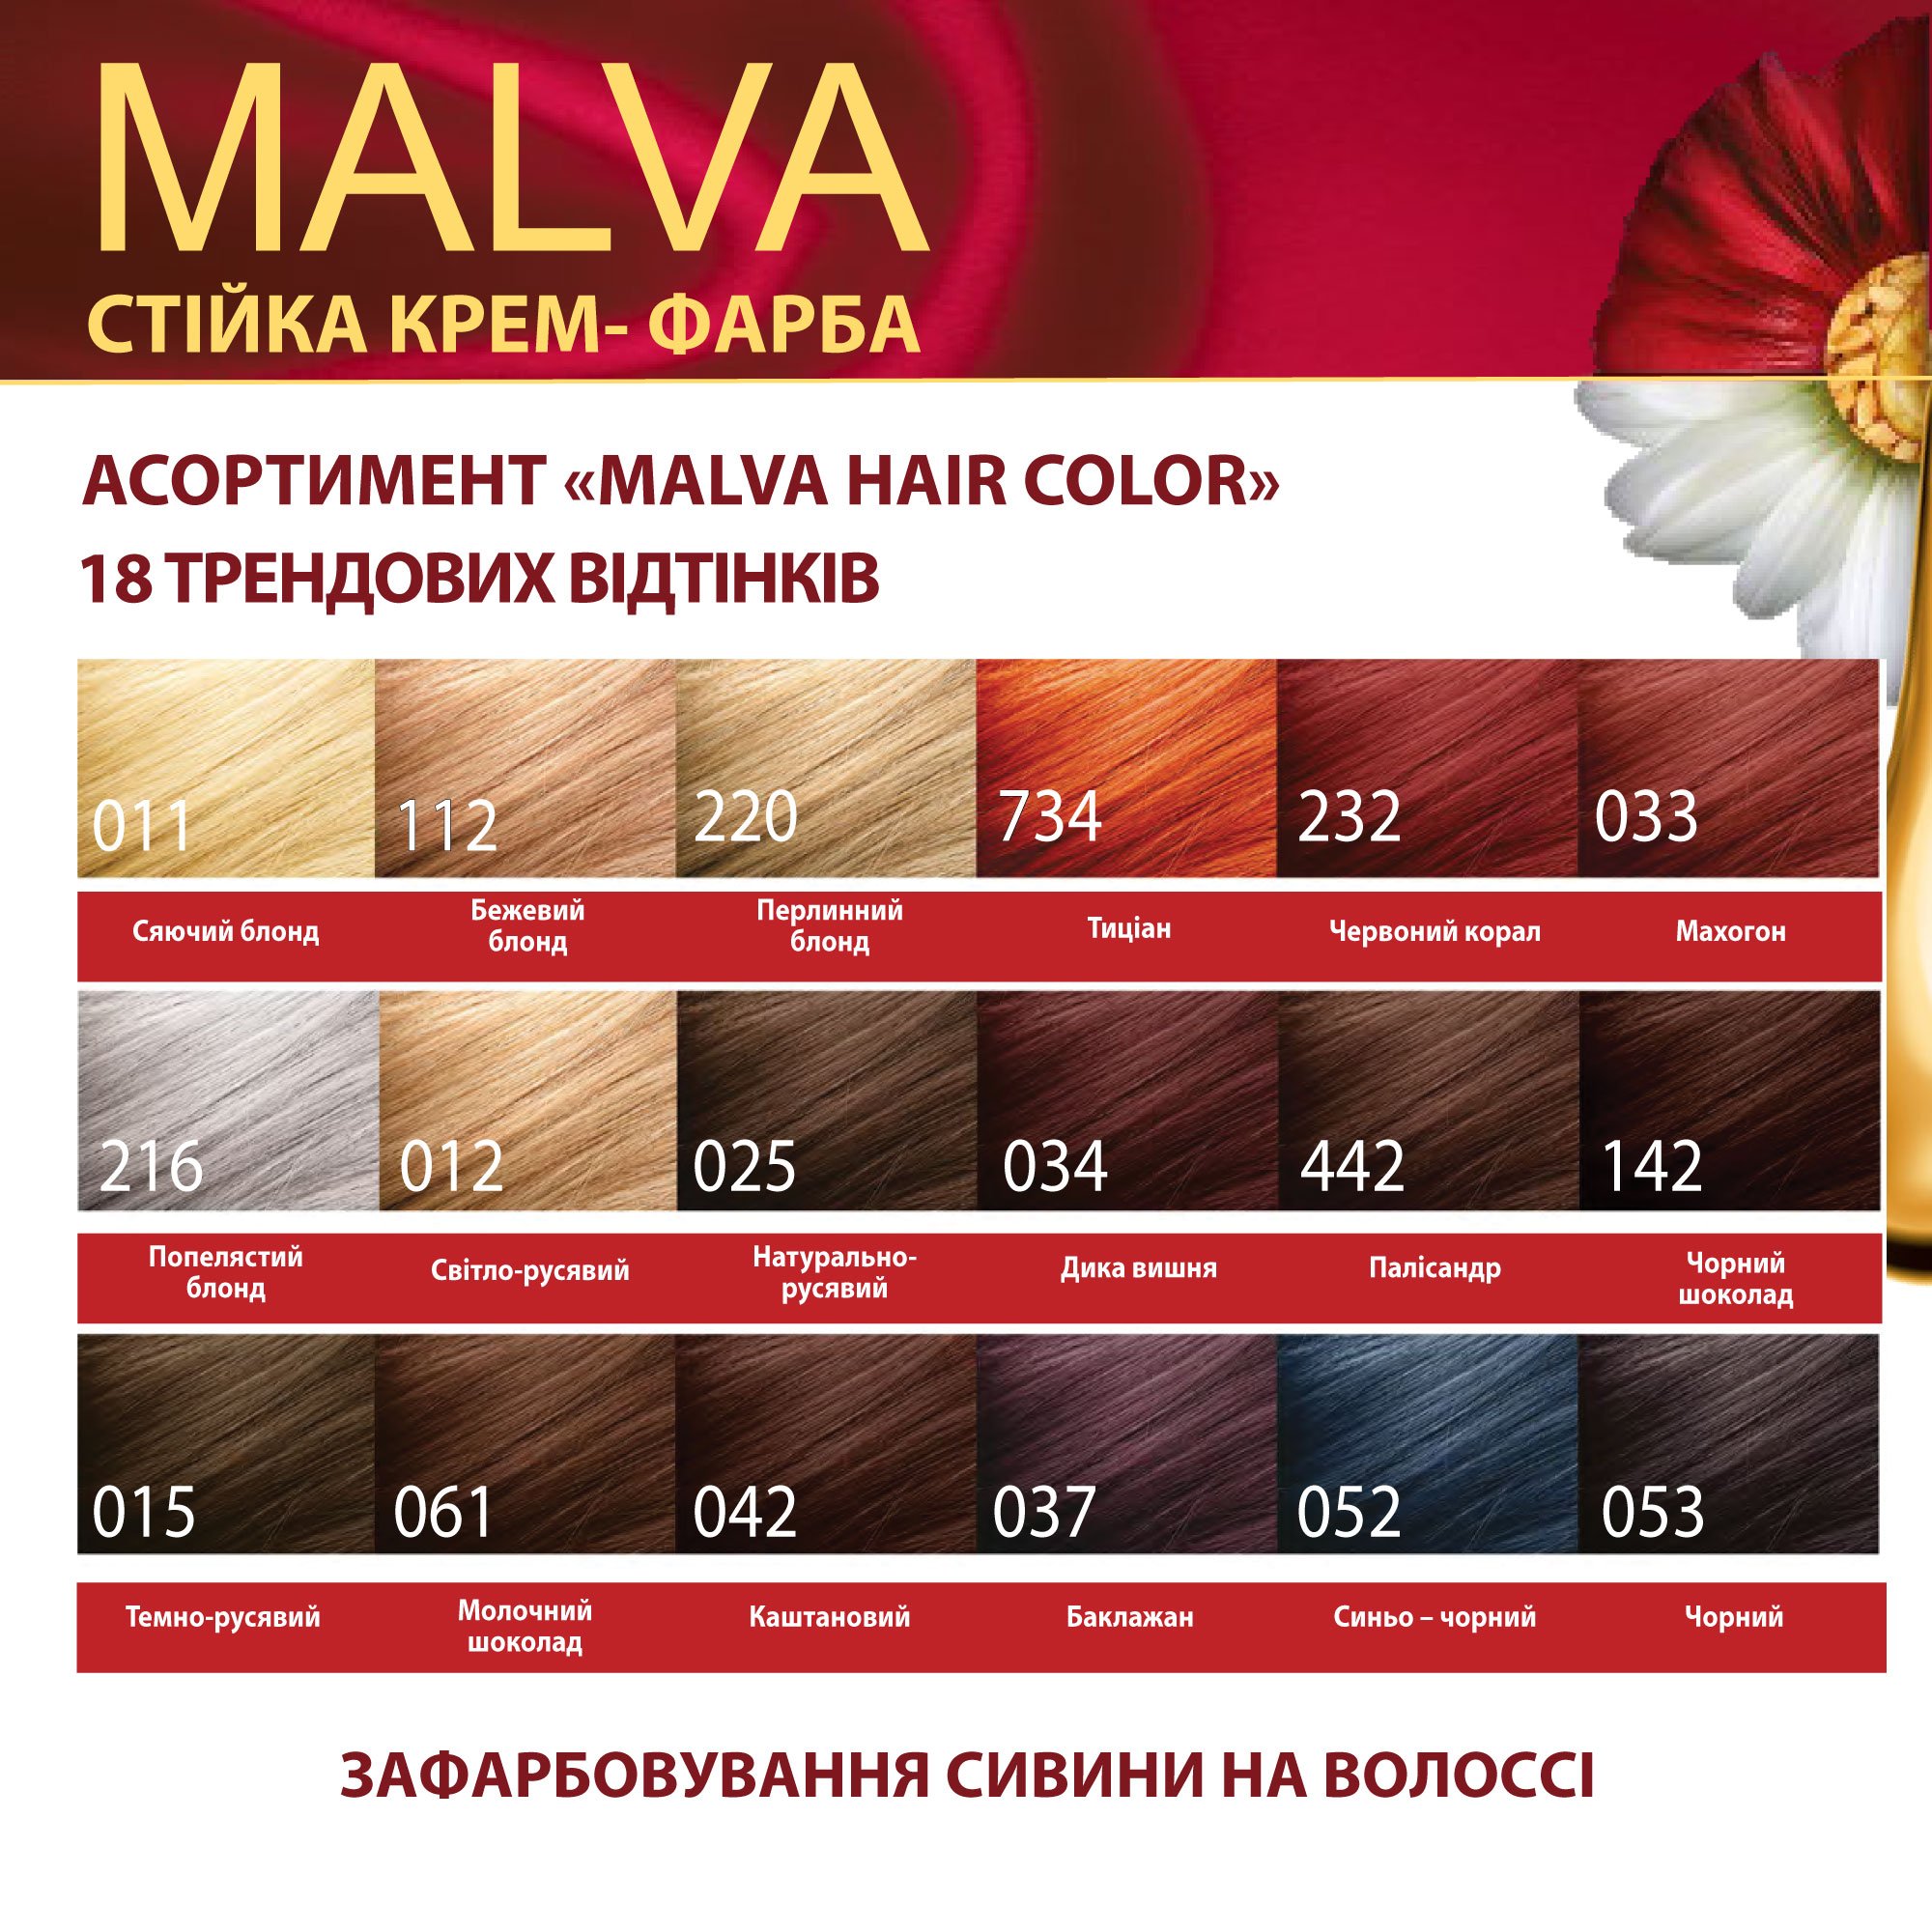 Крем-фарба для волосся Acme Color Malva, відтінок 012 (Світло-русявий), 95 мл - фото 6